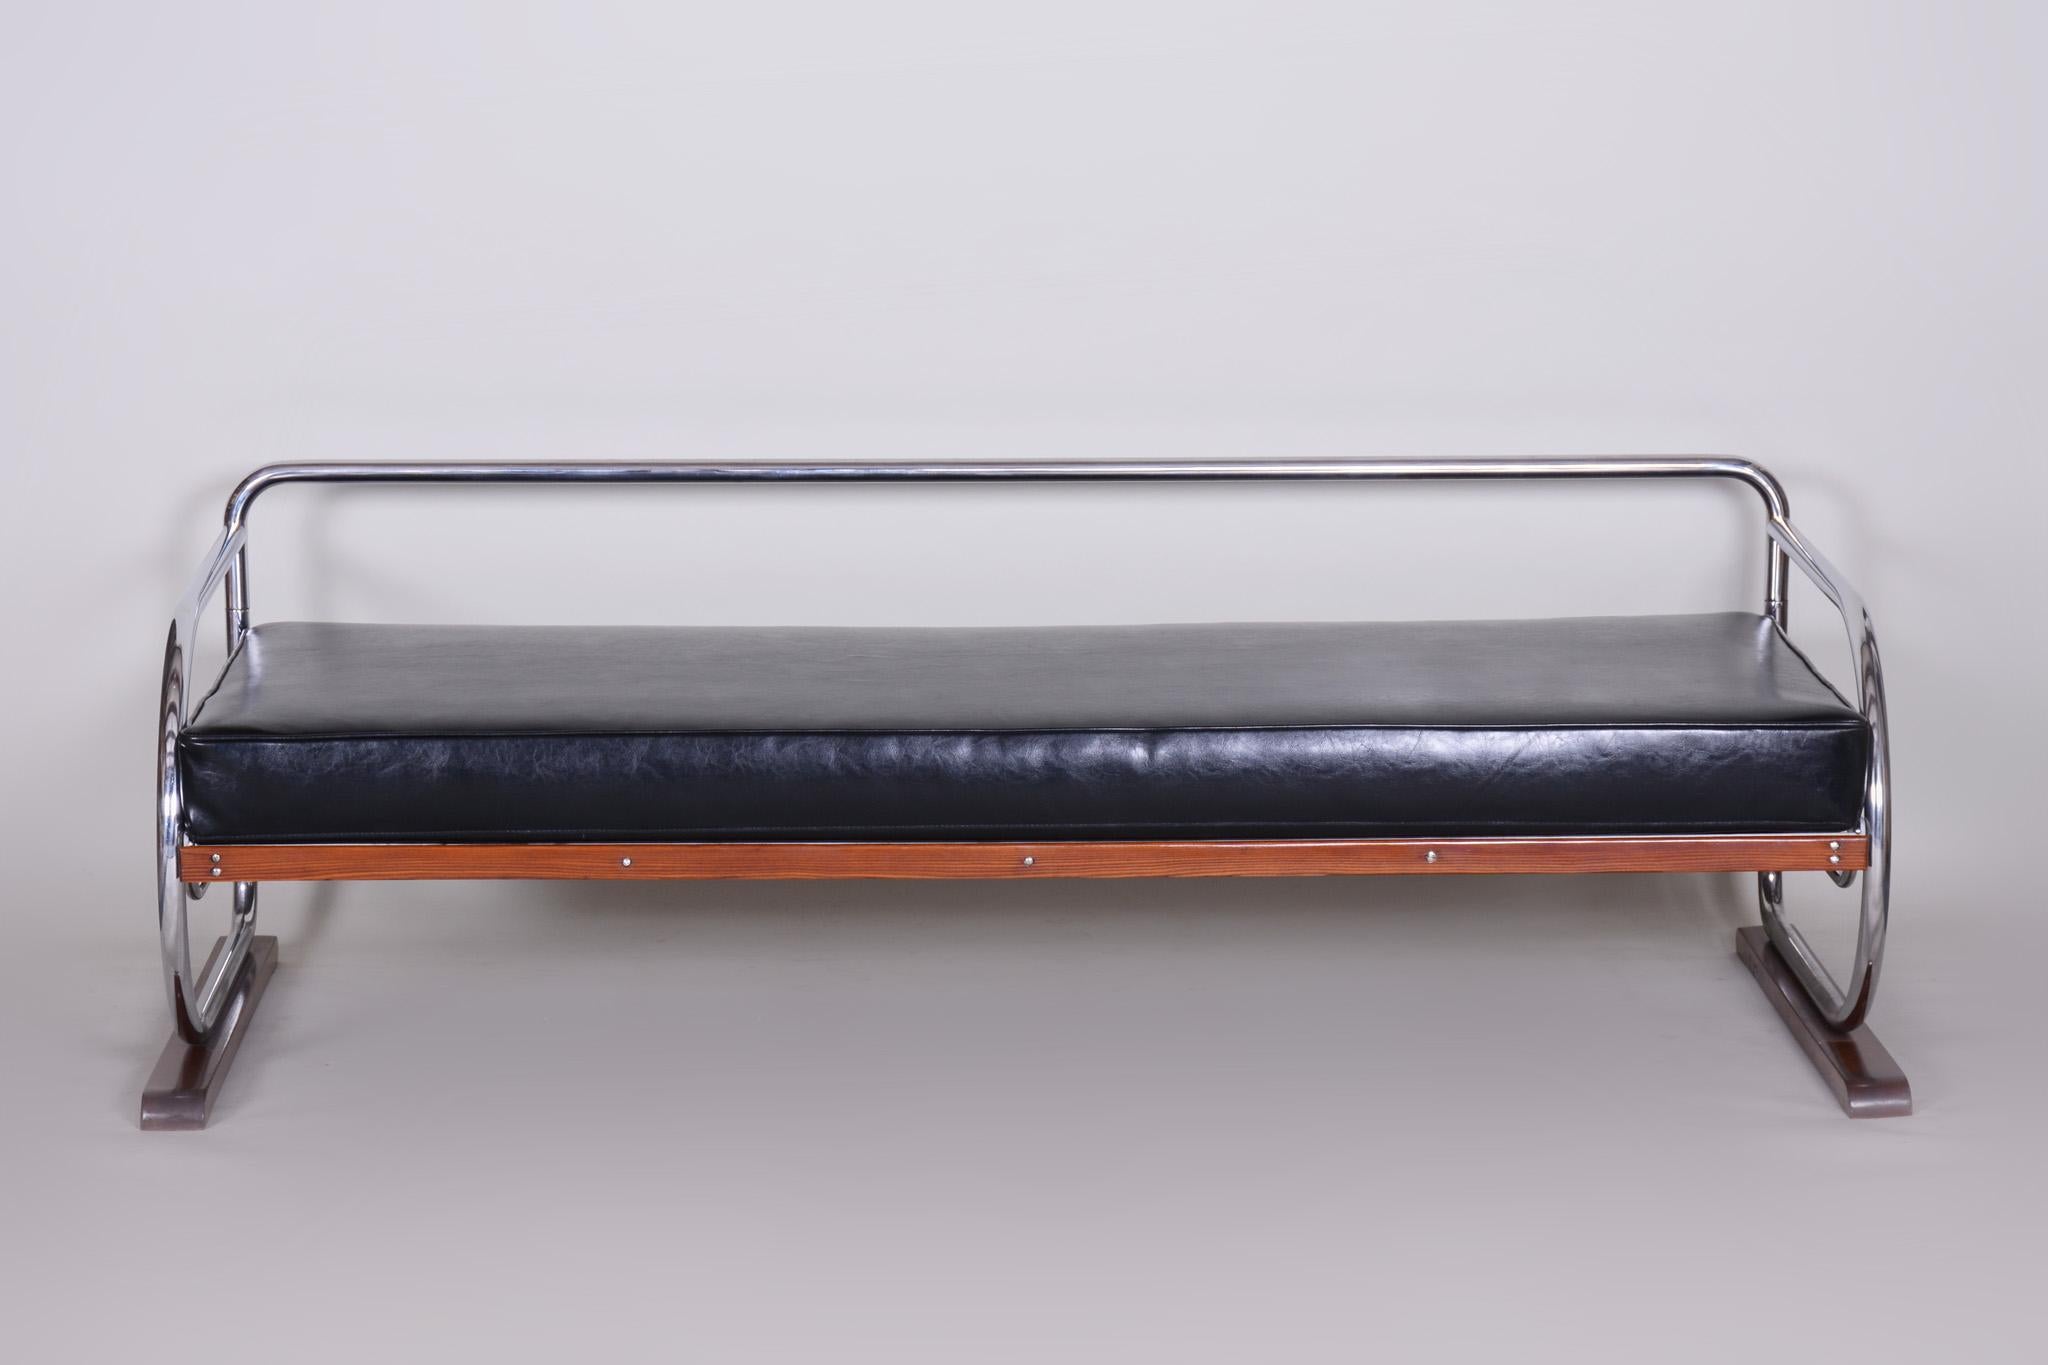 Canapé de style Bauhaus avec une structure en bois laqué et en acier tubulaire chromé.
Fabriqué par Robert Slezák dans les années 1930.
L'acier tubulaire chromé est en parfait état d'origine.
Rembourré en cuir noir de haute qualité.
Source :